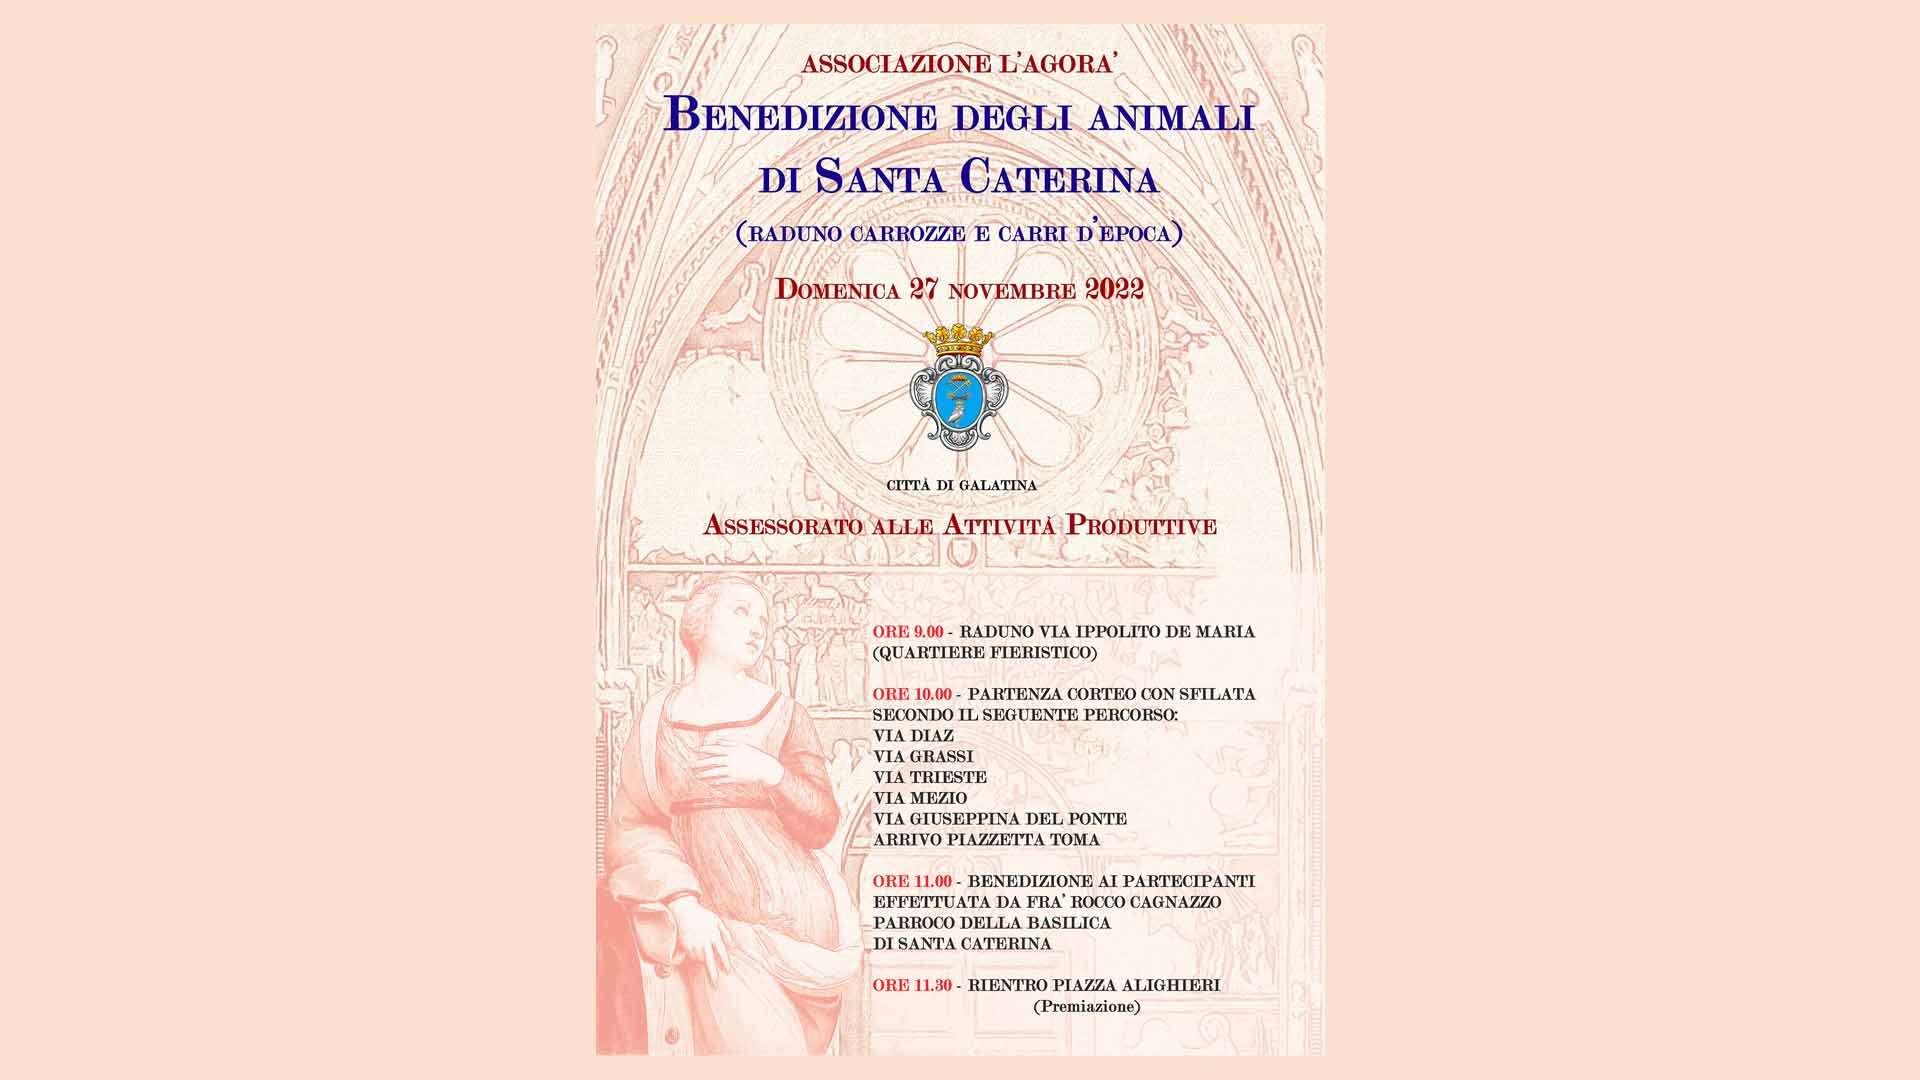 Benedizione degli animali di Santa Caterina